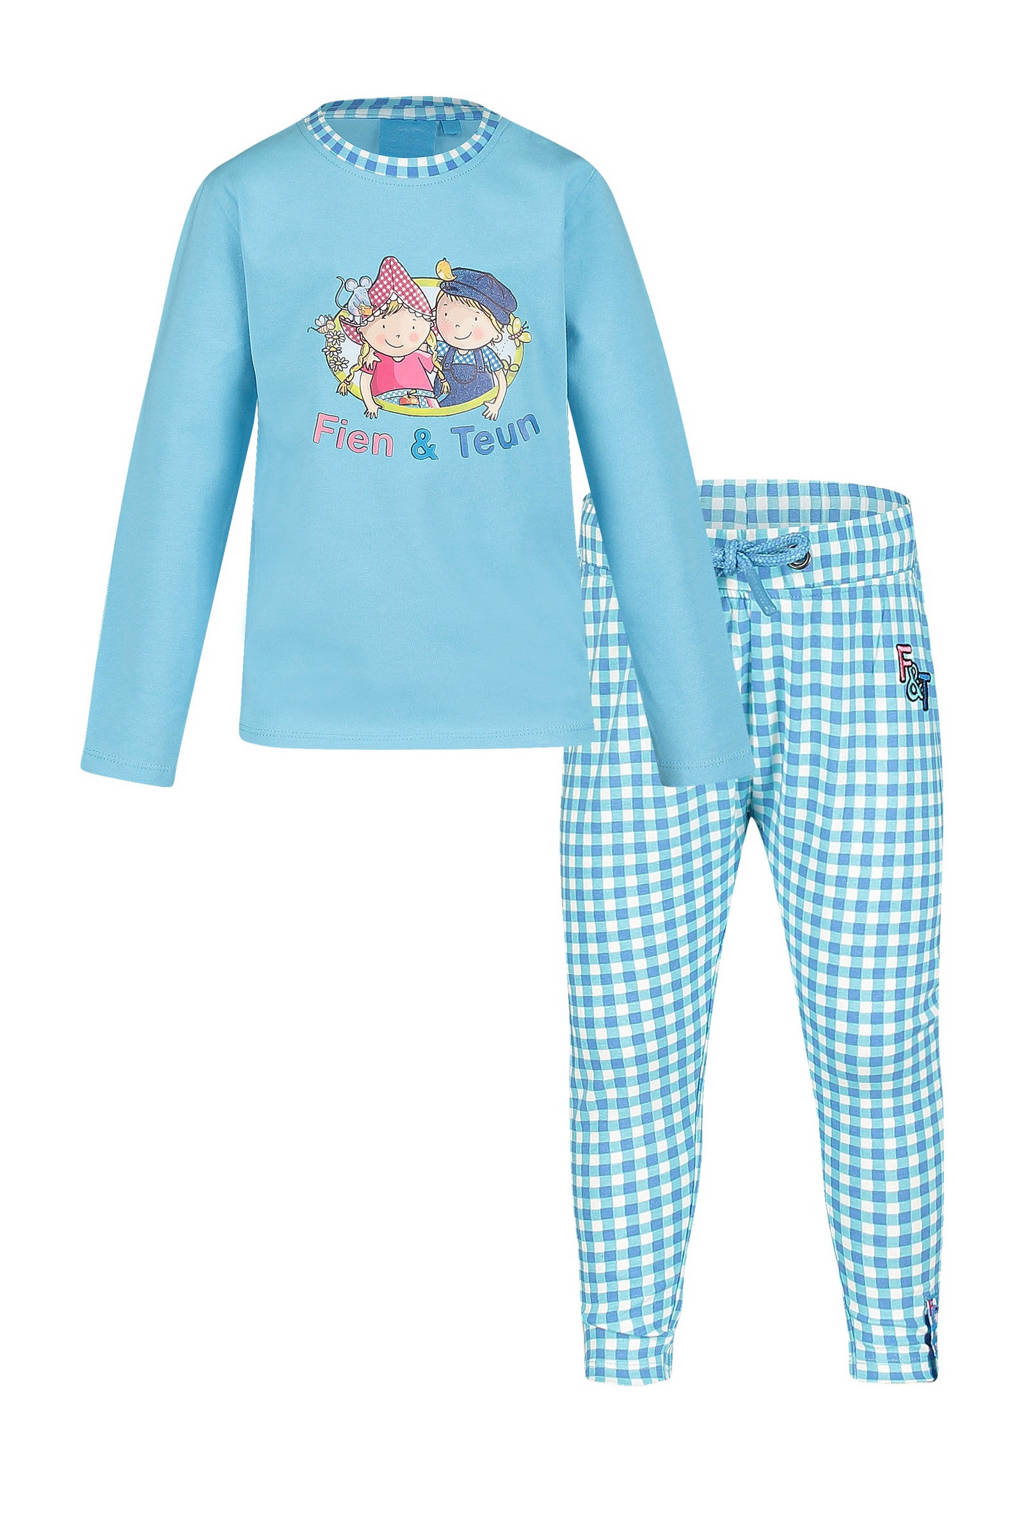 Zegevieren Labe stimuleren Fien & Teun pyjama Moos met logo opdruk blauw/wit | wehkamp